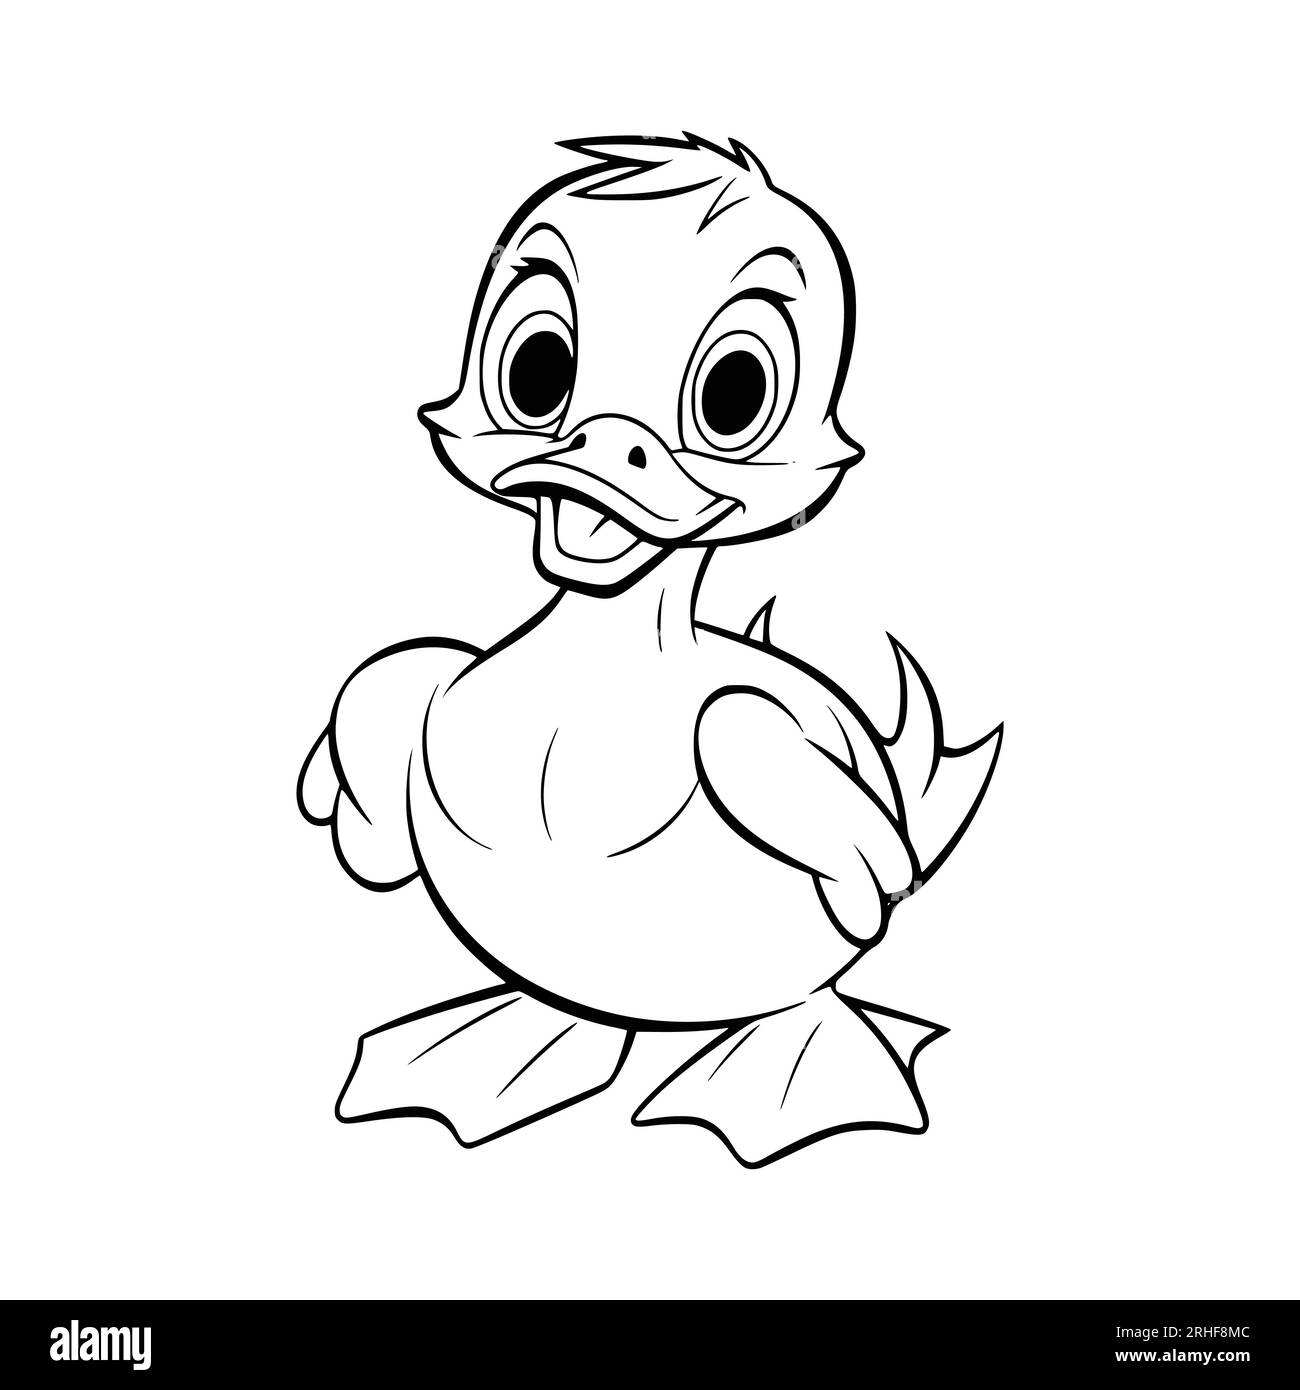 Download Donald Duck Wallpaper